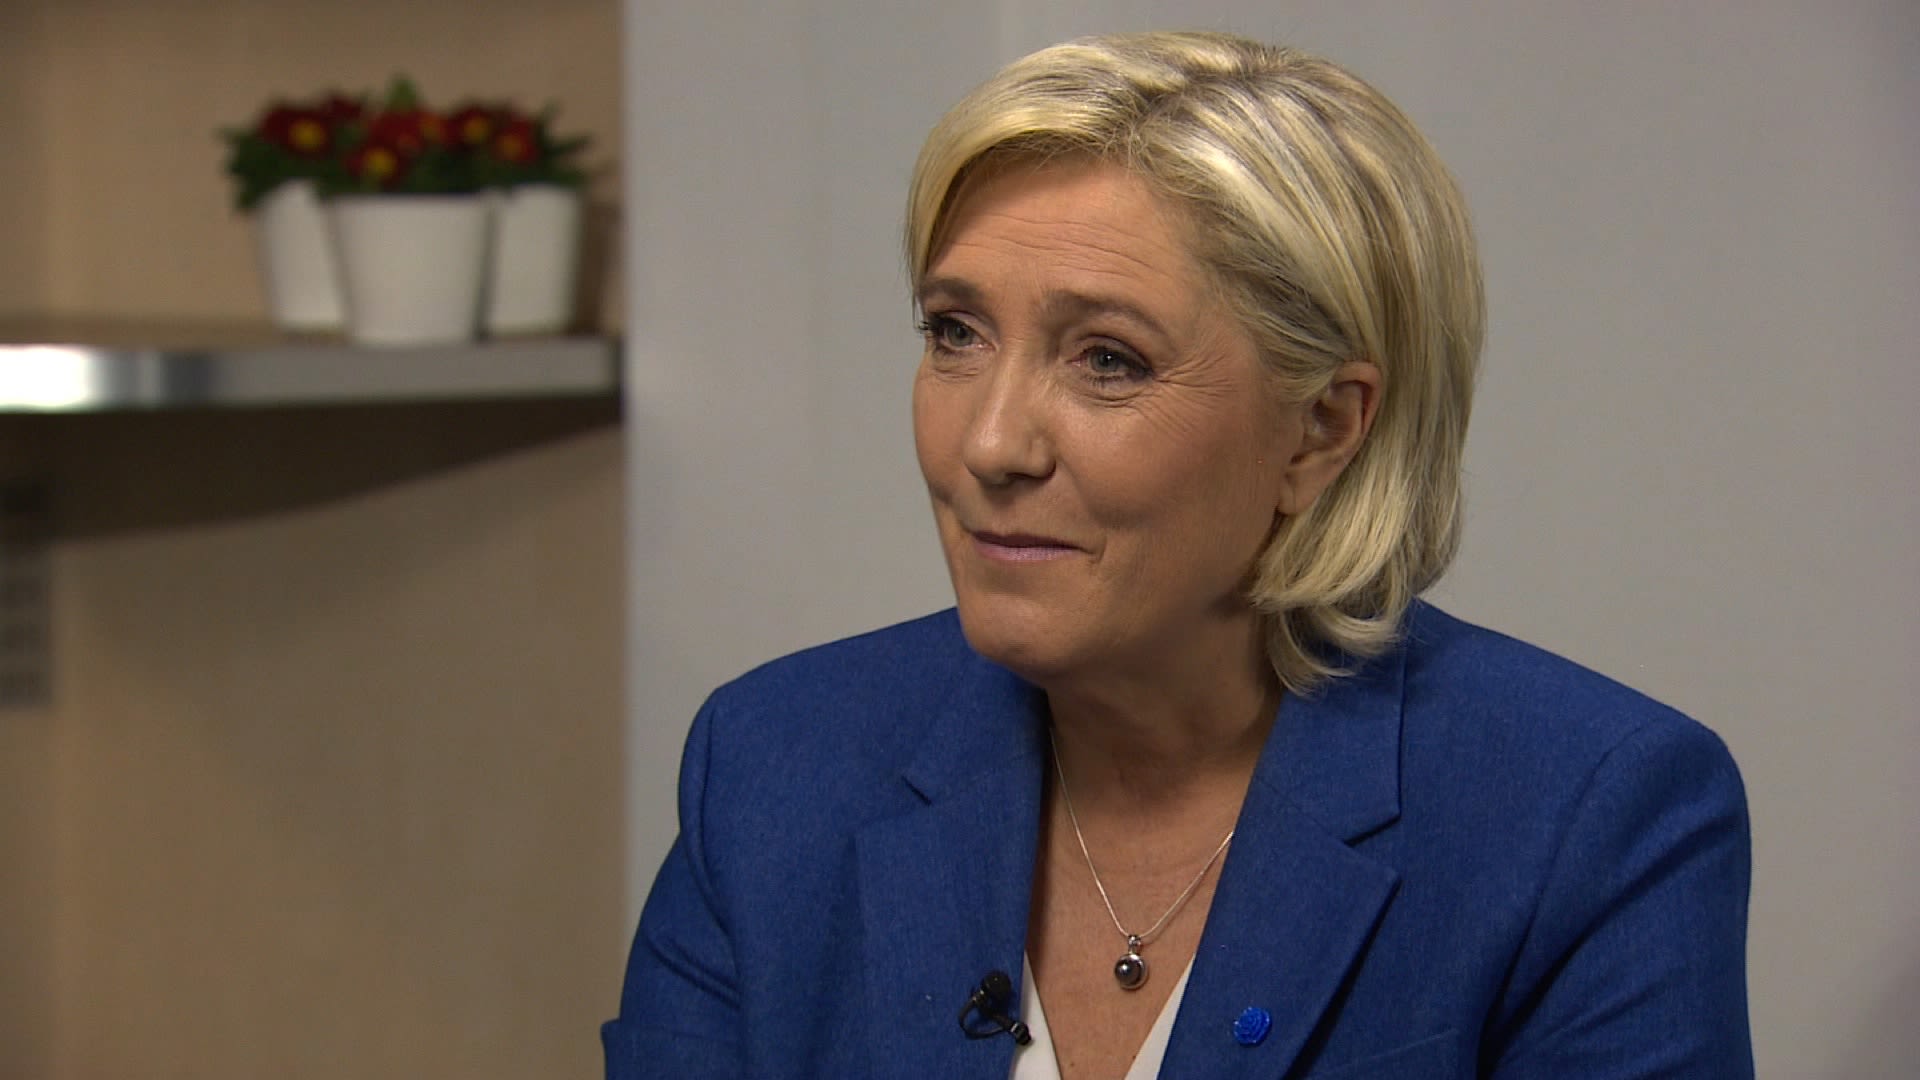 Marine Le Pen's Climate Policy Leans Ecofascist